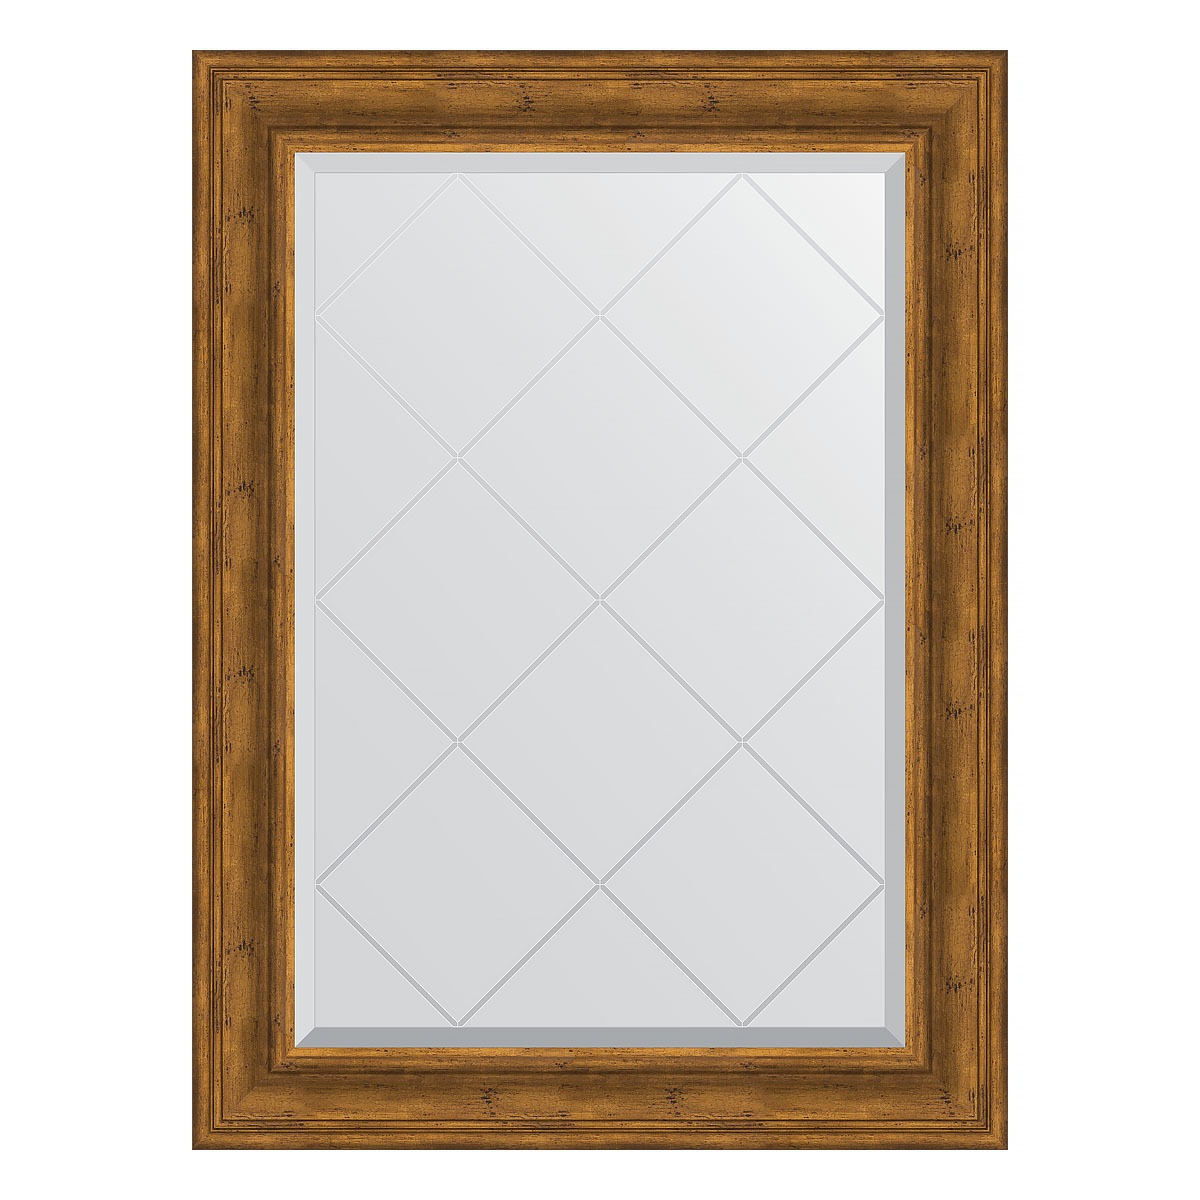 Зеркало с гравировкой в багетной раме Evoform травленая бронза 99 мм 79x106 см зеркало с гравировкой в багетной раме травленая бронза 99 мм 79x106 см